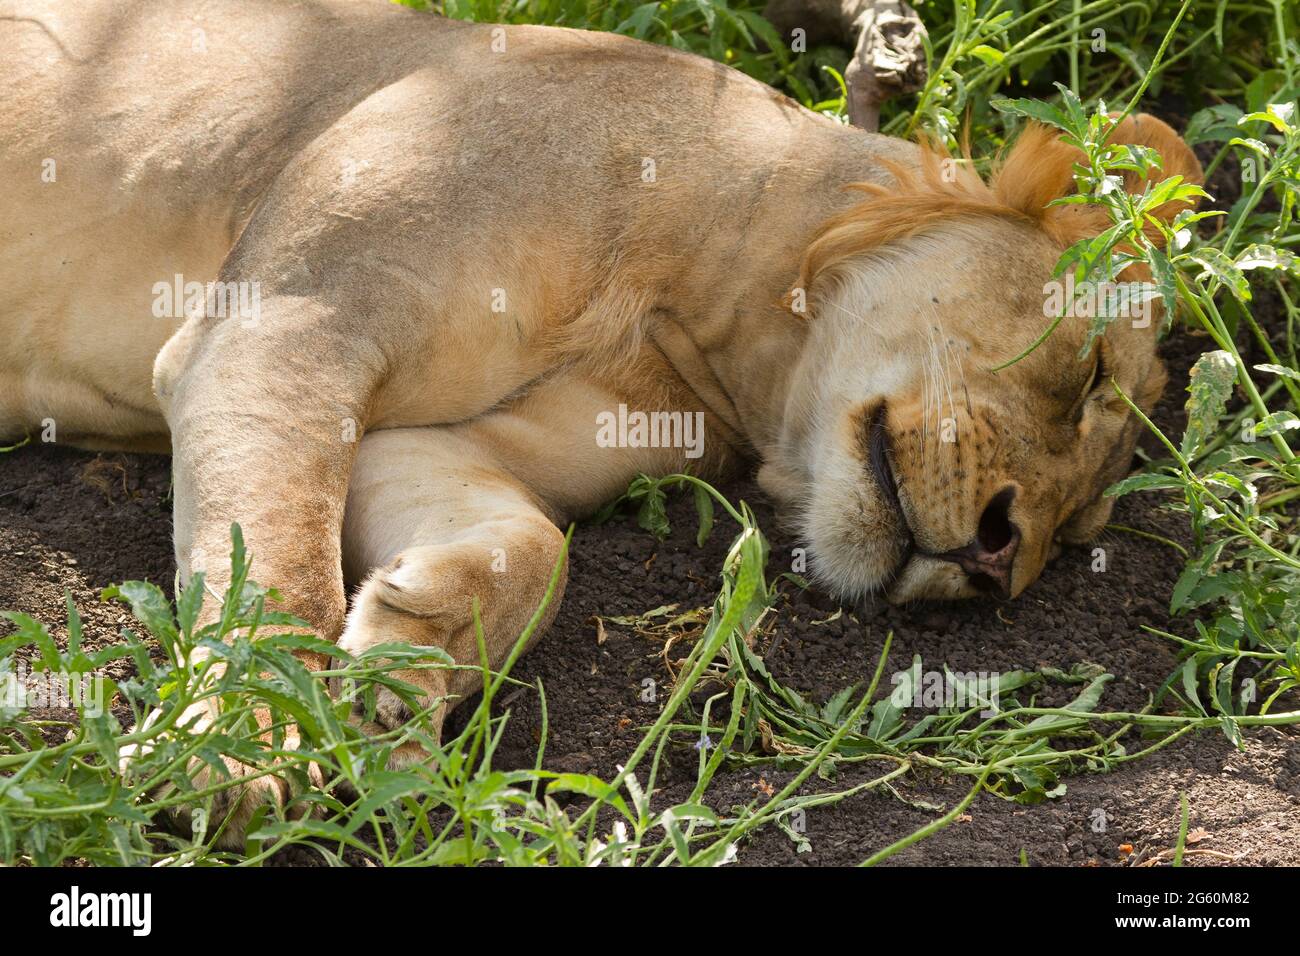 Un homme lion, Panthera leo, dort sur le sol à l'ombre. Banque D'Images